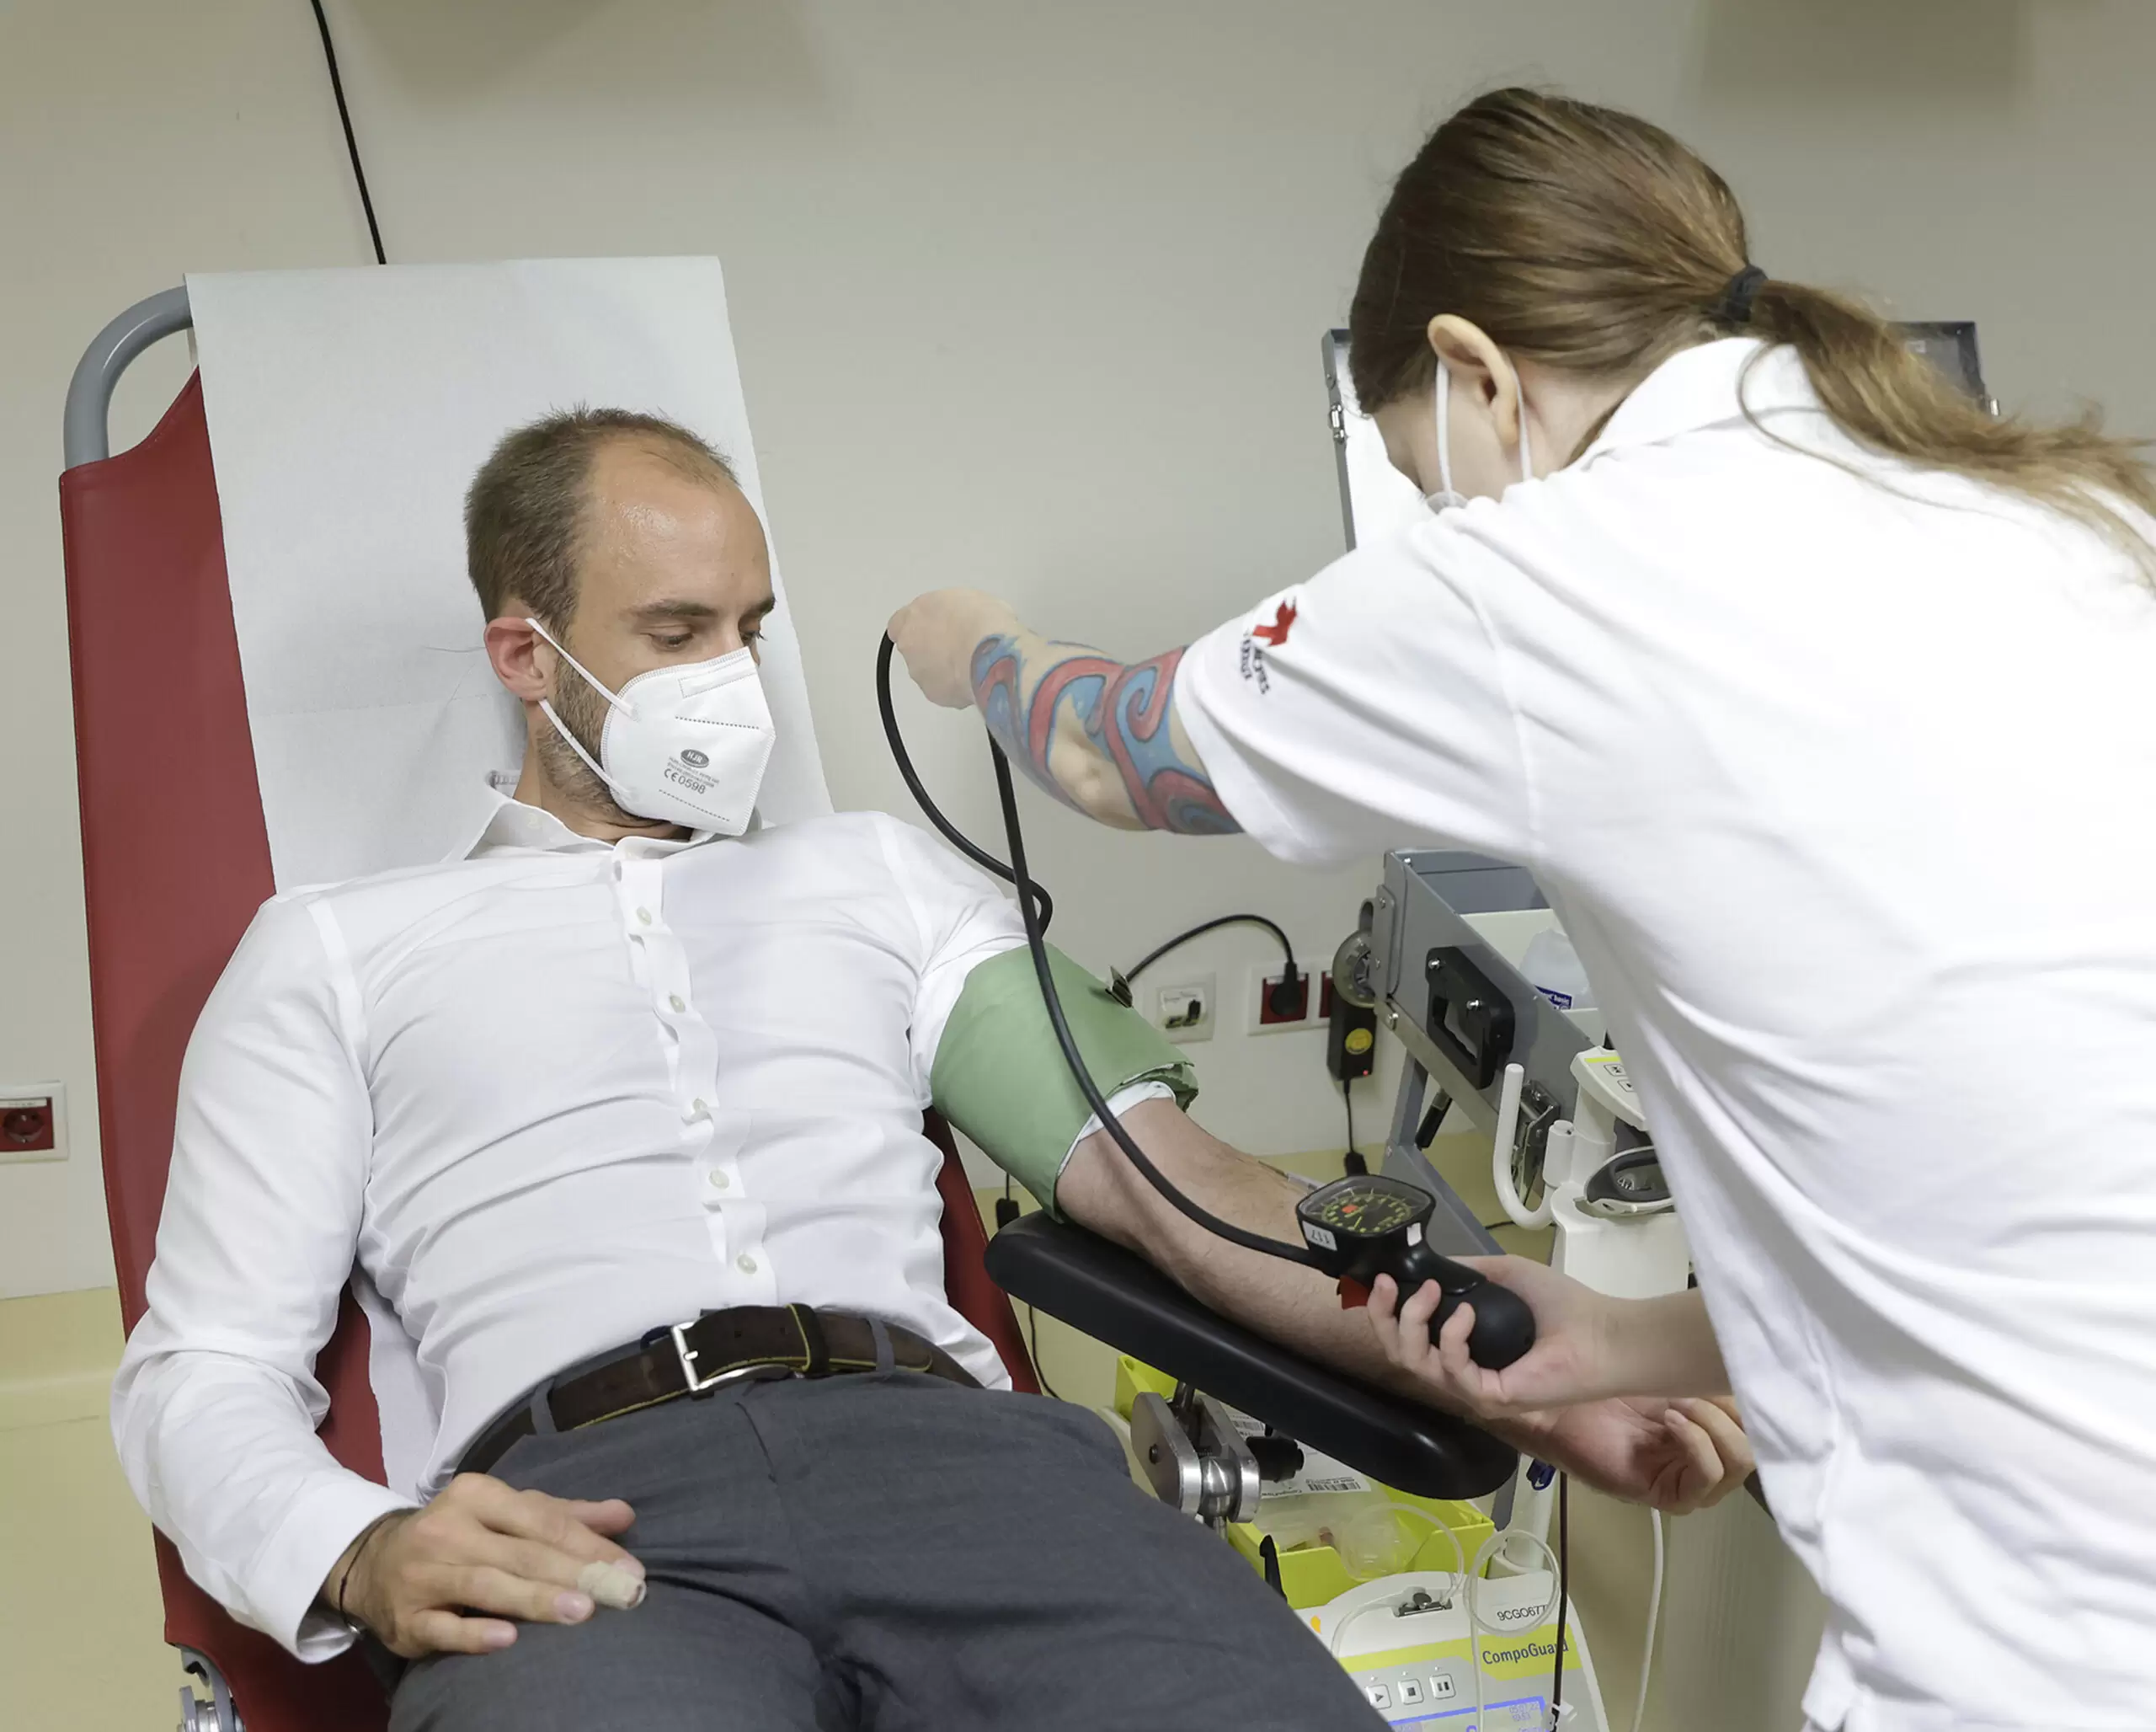 Staatssekretär Florian Tursky unterstützt den Blutspende-Aufruf des Roten Kreuzes und der Bundesregierung - und geht mit gutem Beispiel voran. Foto: Regina Aigner/BKA